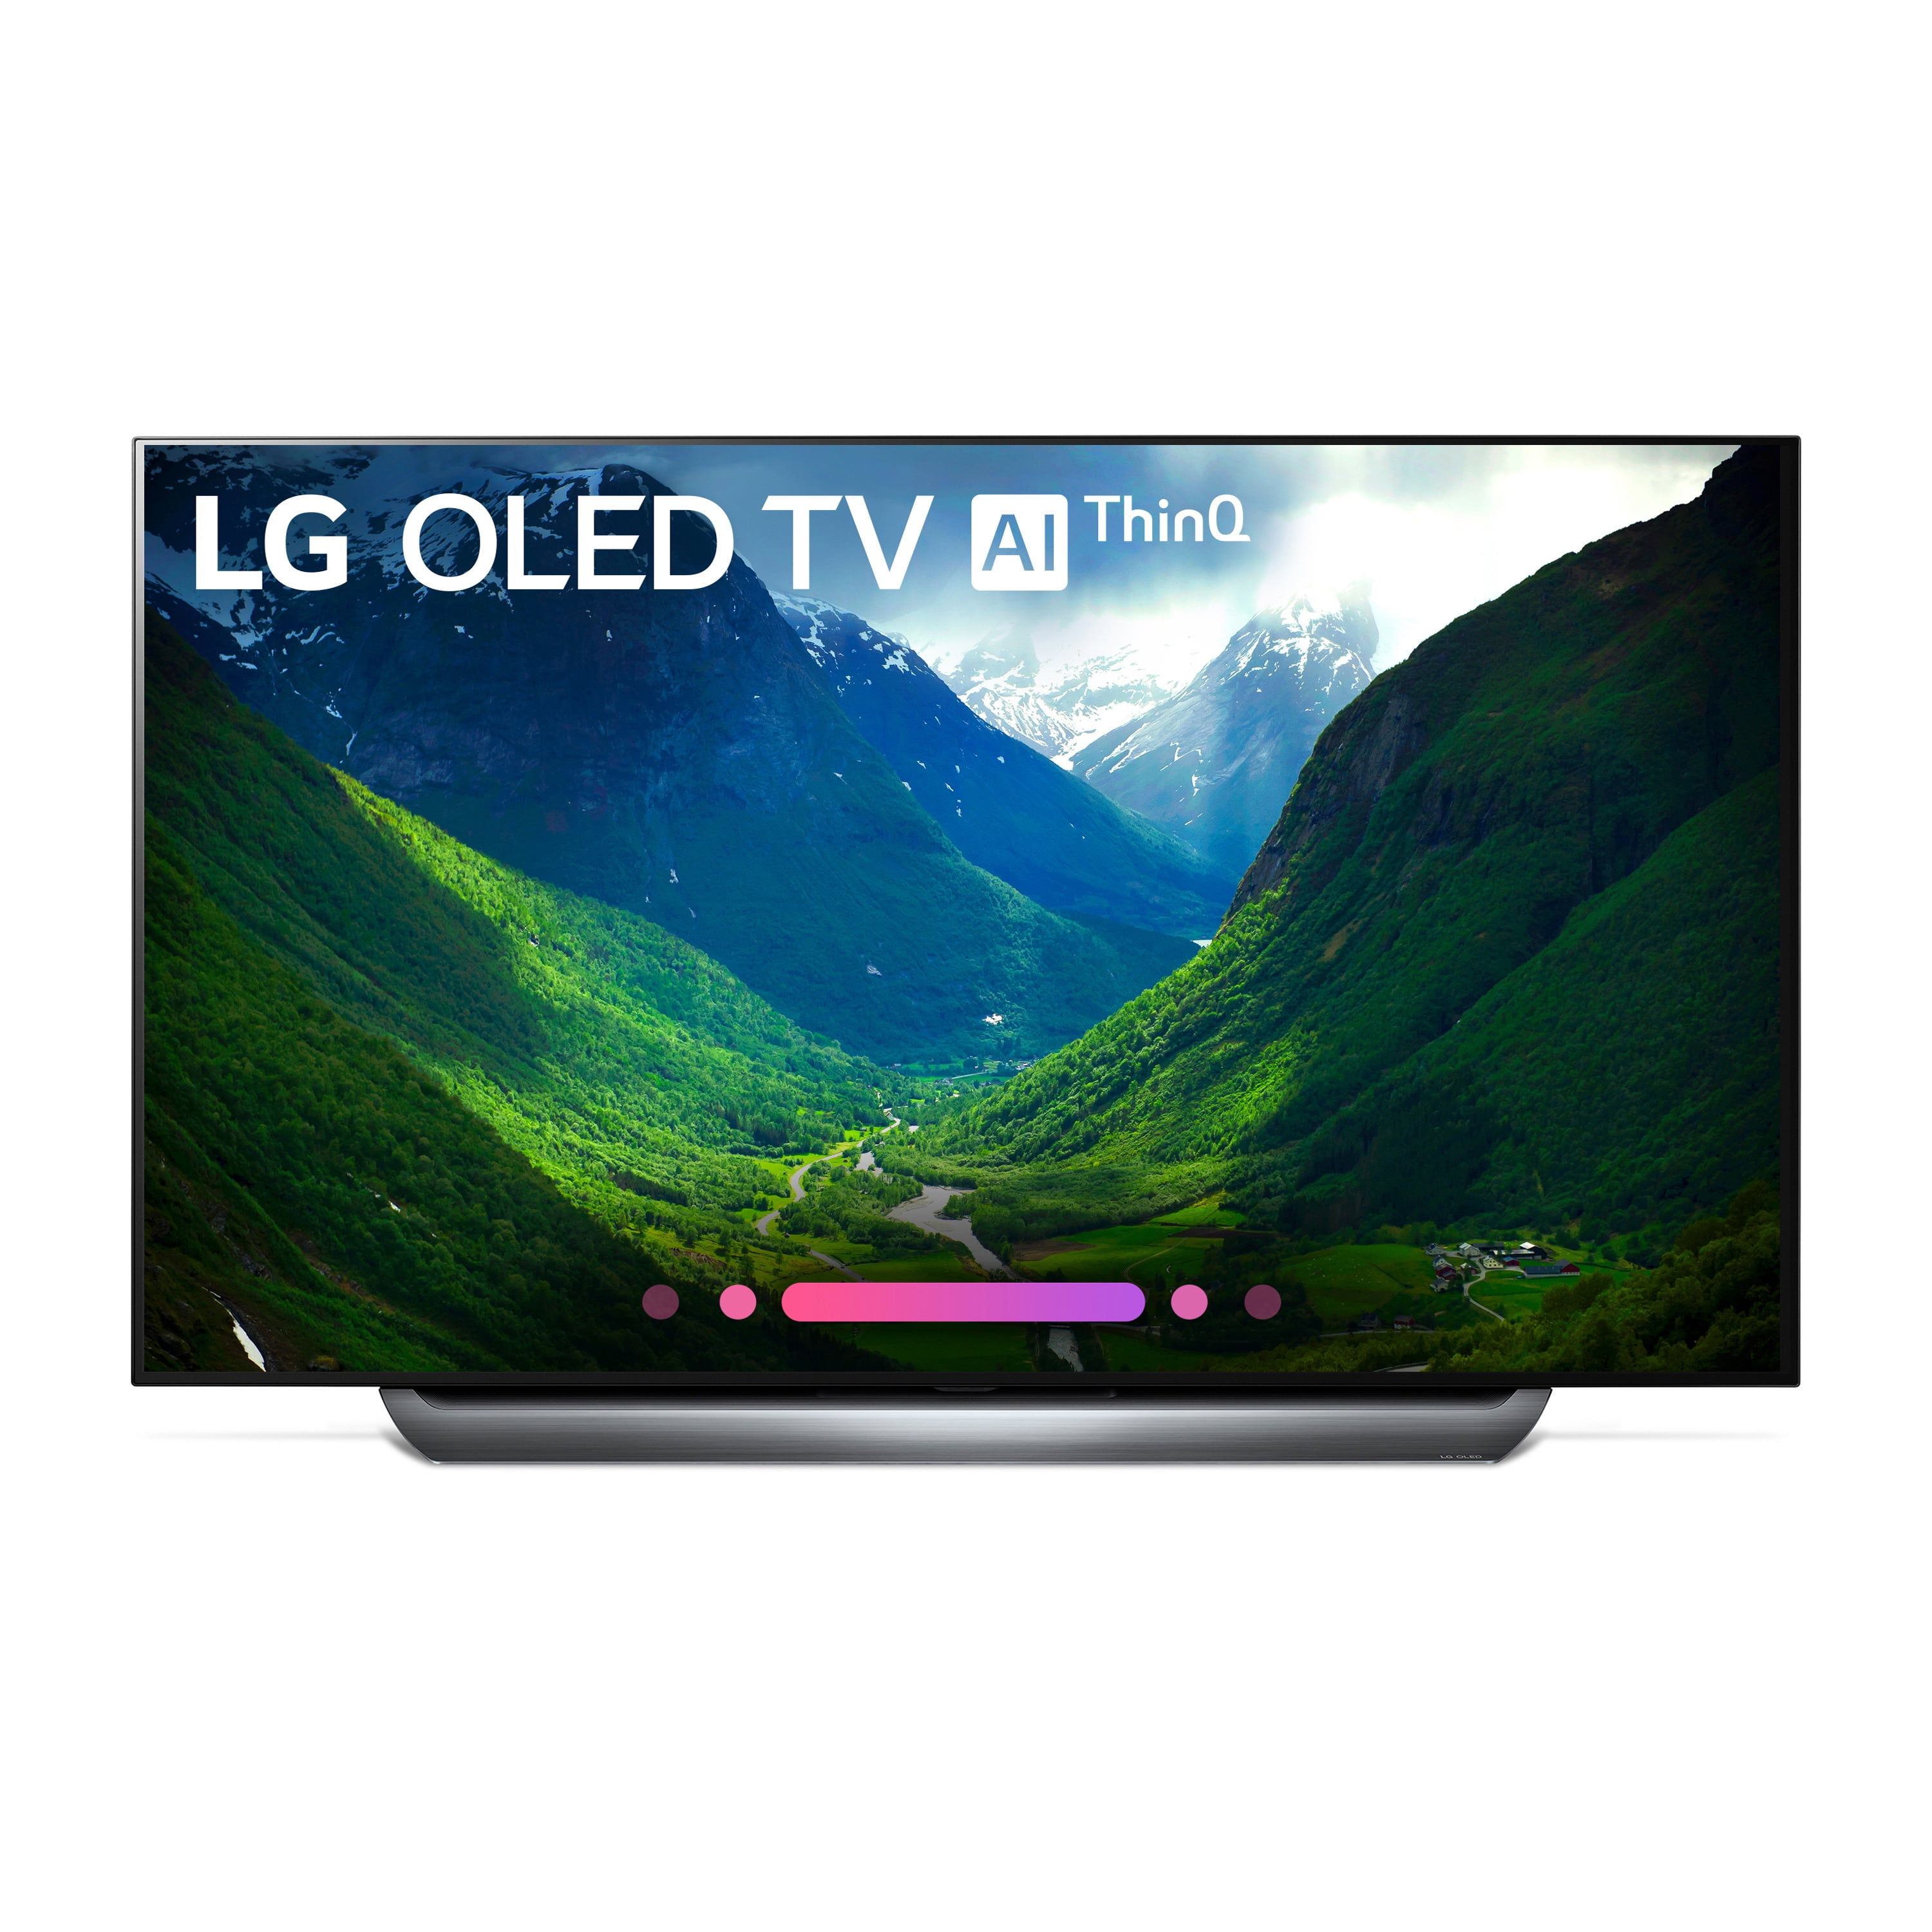 Lg g4 телевизор. LG OLED 55. Телевизор LG олед 55. Телевизор LG олед 77. Телевизор 55 дюймов LG OLED.